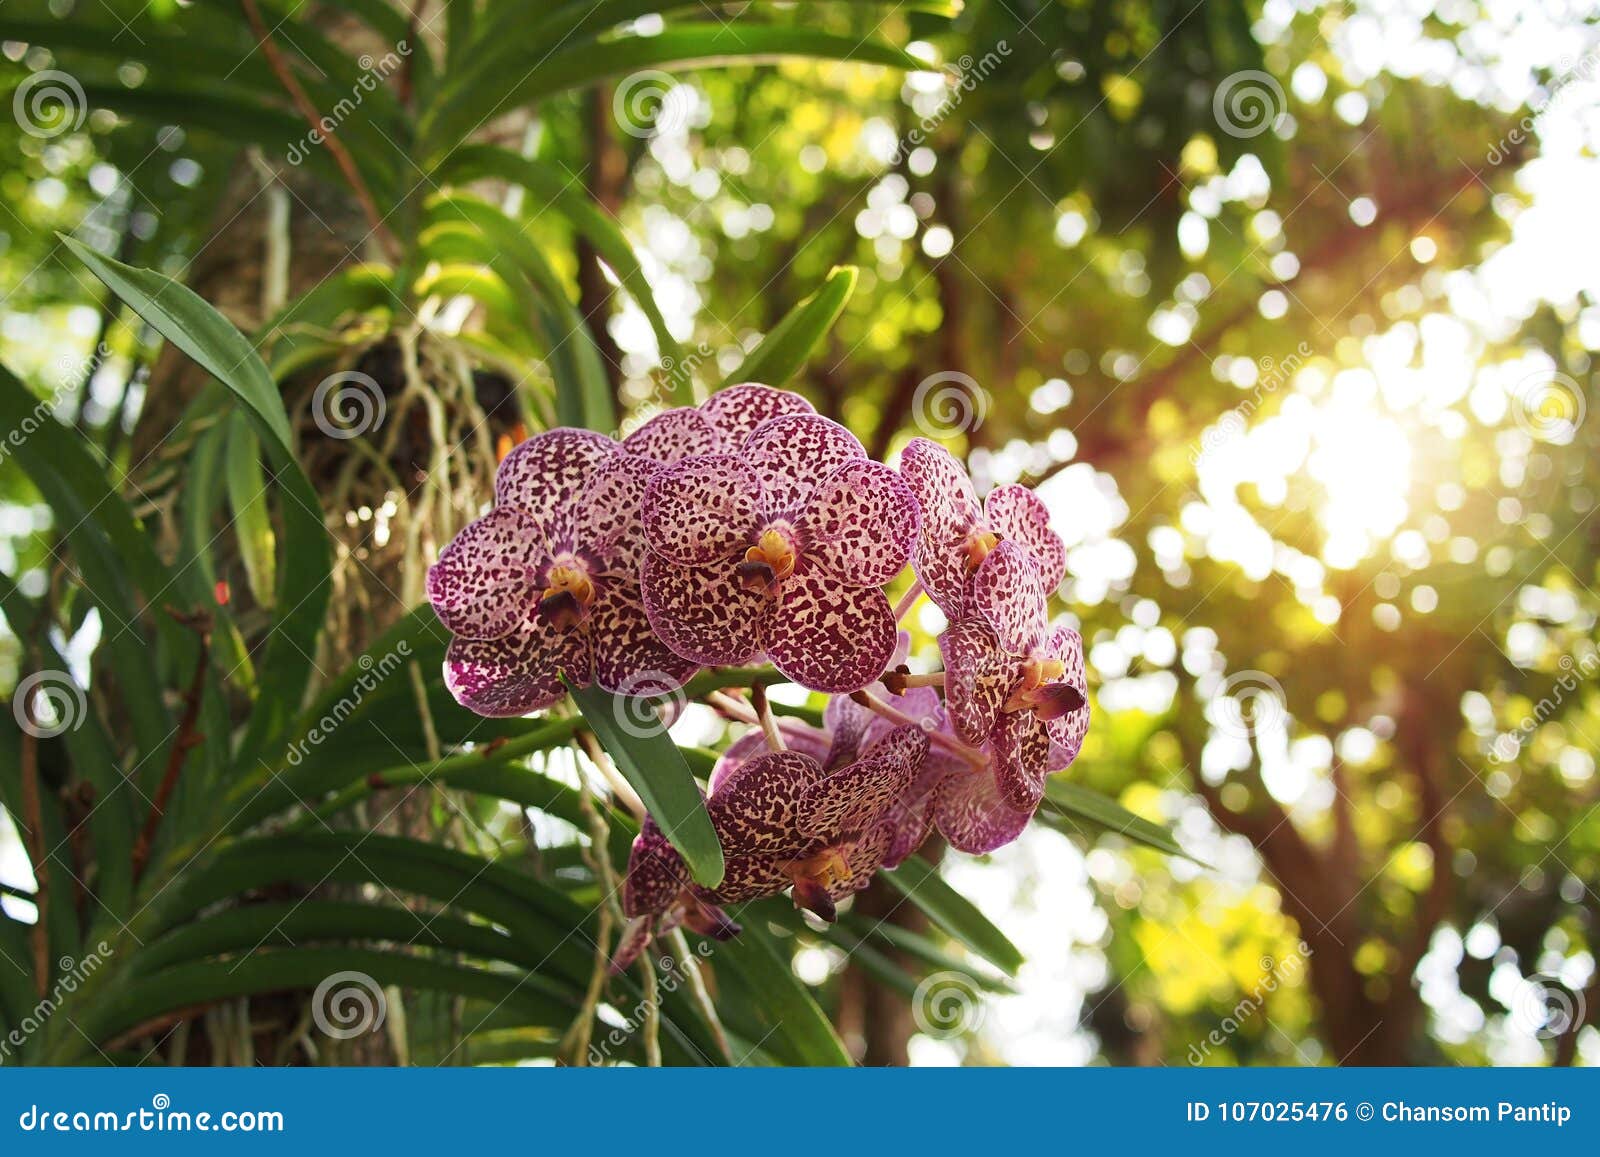 Flores Exóticas De La Orquídea De Vanda Con Los Puntos Violetas Que Viven  En Tru Del árbol Foto de archivo - Imagen de verde, enmascarado: 107025476